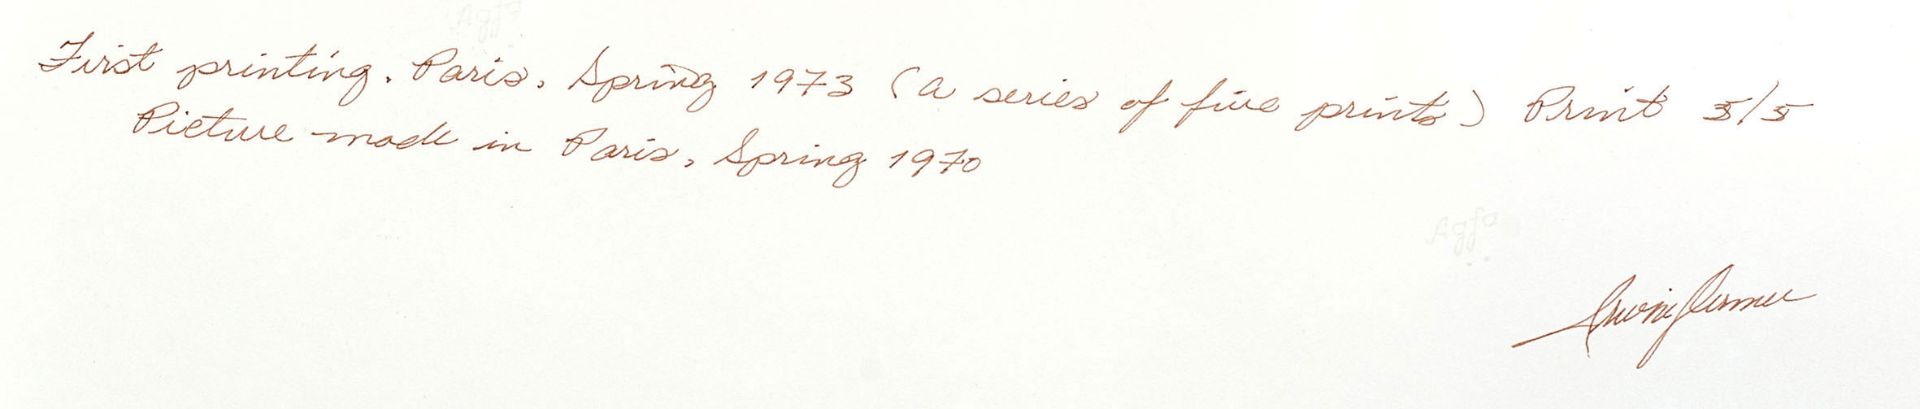 DERMER, IRWINBaltimore 1925Ohne Titel.Silbergelatineabzug,verso sig., num. 5/5, dat. 1970,40x30,5 cm - Bild 2 aus 2